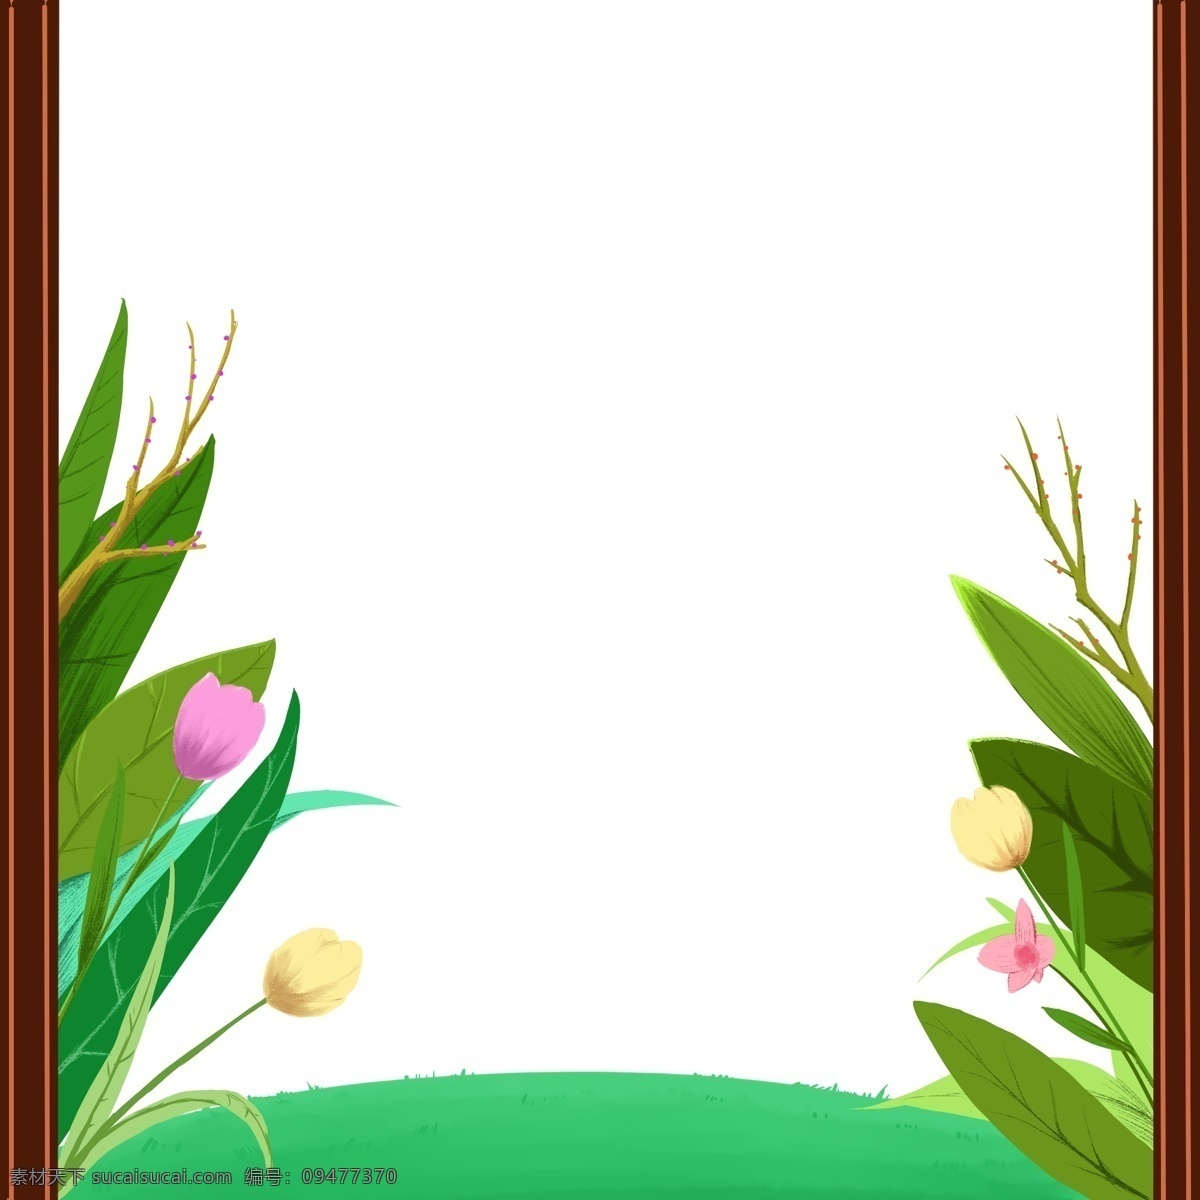 对称 式 情人节 花丛 边框 装饰 木边框 浪漫 温馨 粉色 绿色 草坪 对称式结构 自然 场景 相框